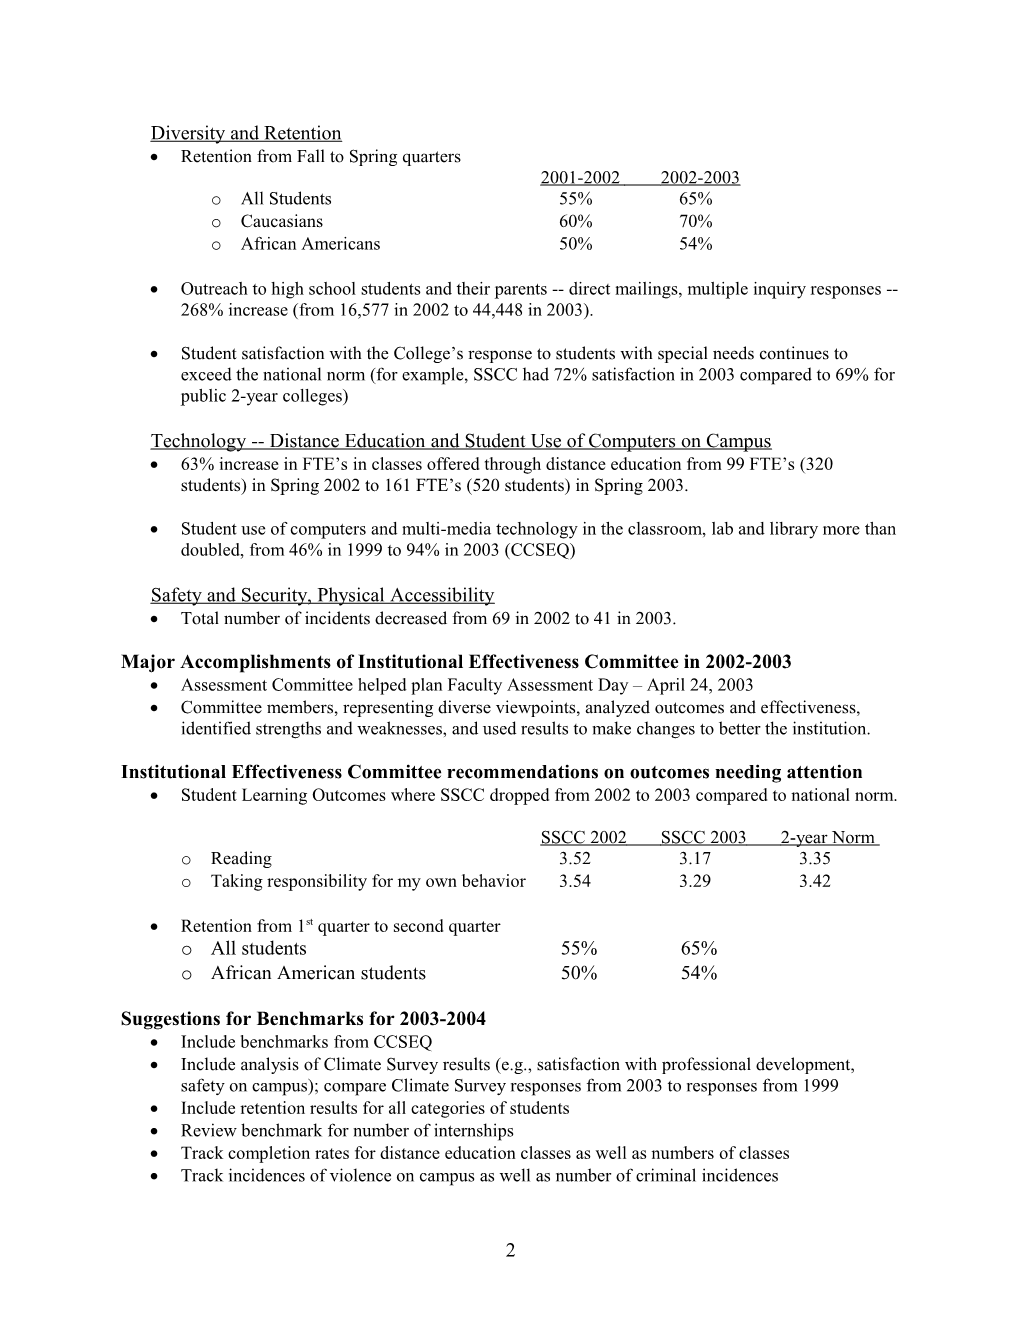 Institutional Effectiveness Committee Report 2001-2002